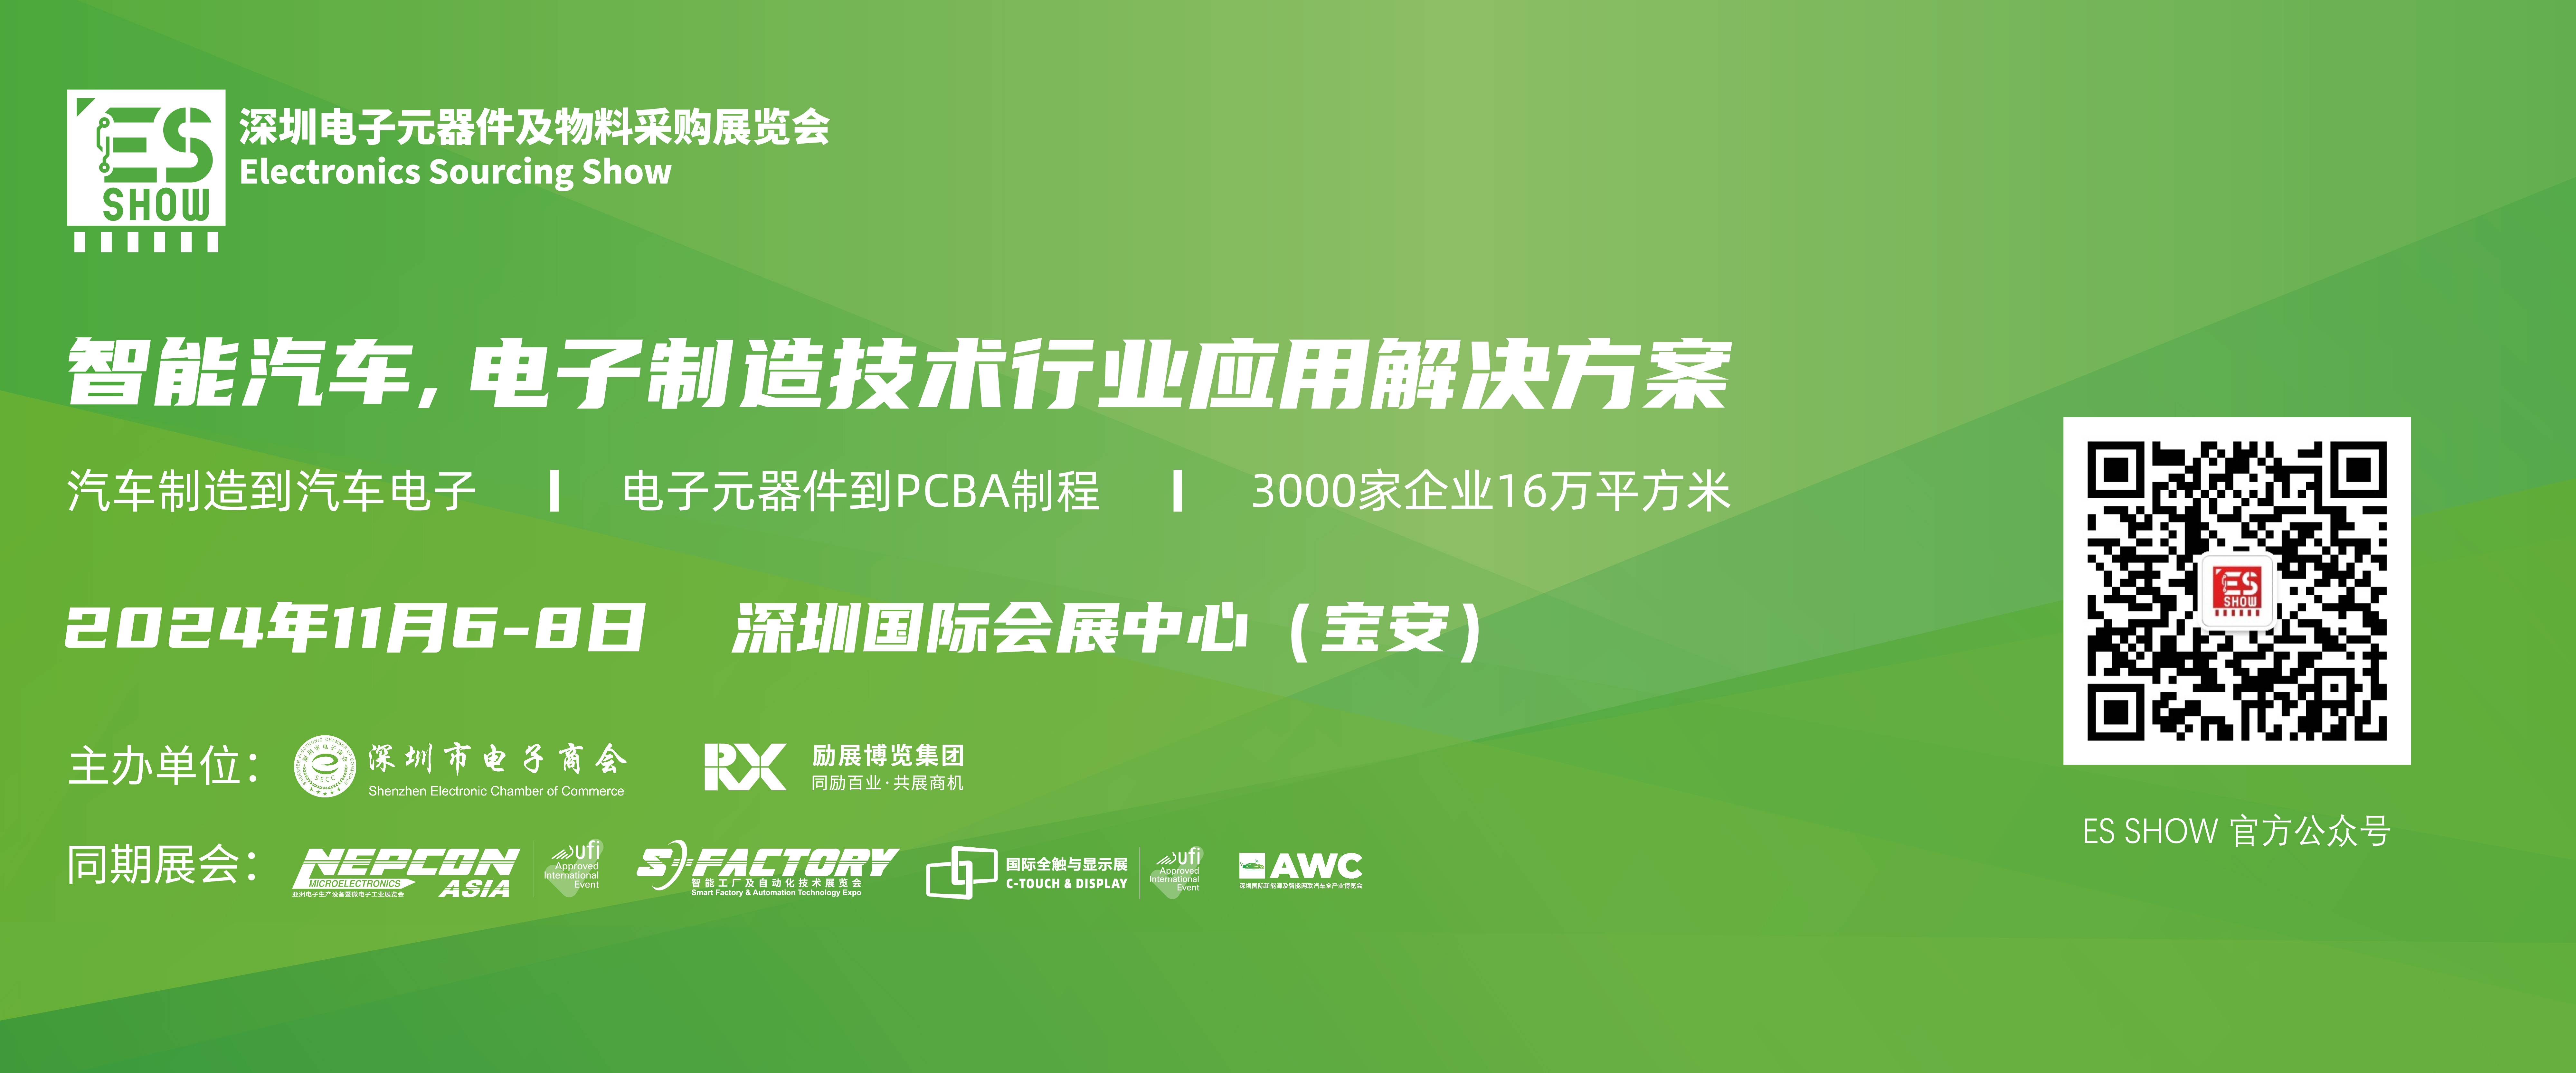 深圳电子展 中国电子展 碳中和 储能 华南电子展